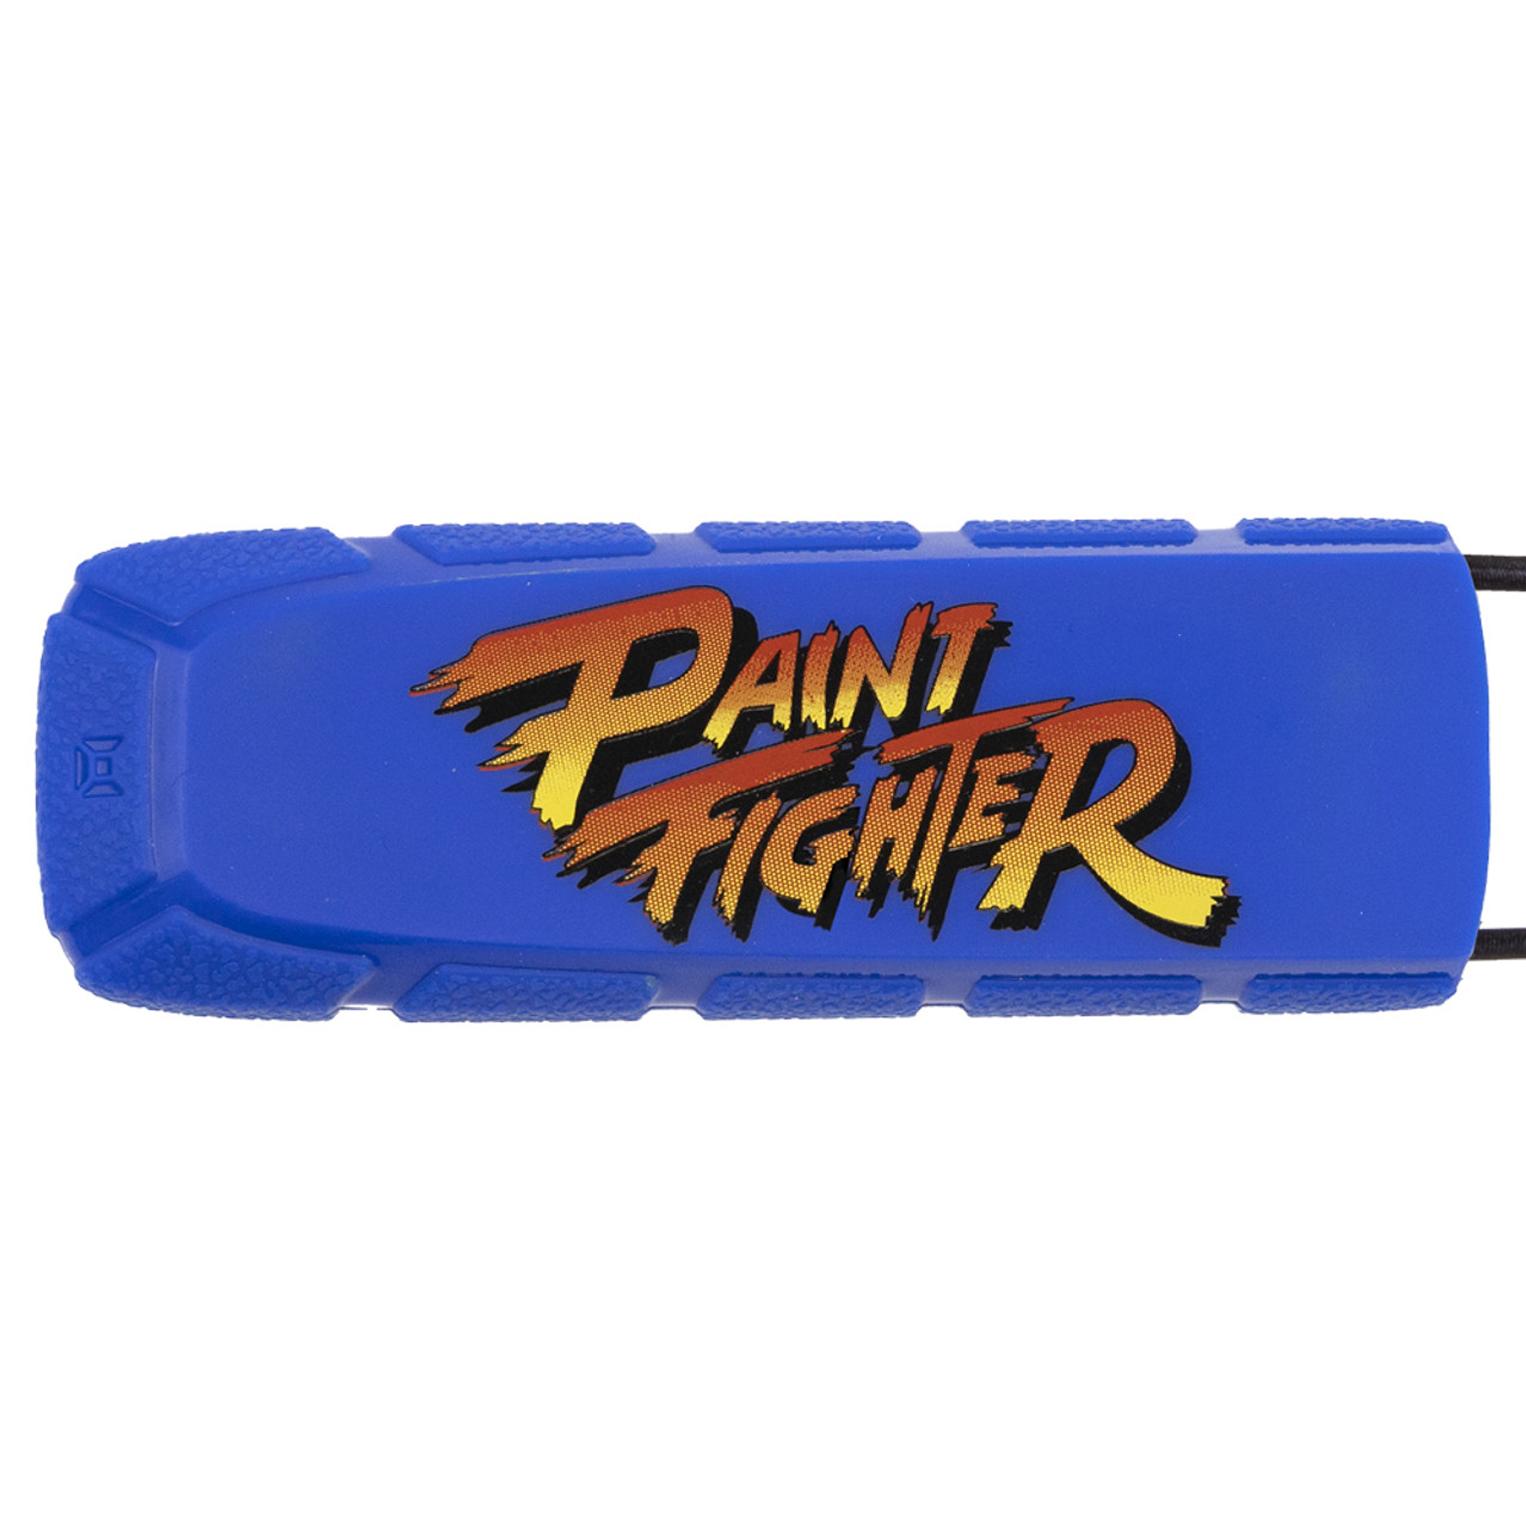 Exalt Bayonet Paint Fighter Blue